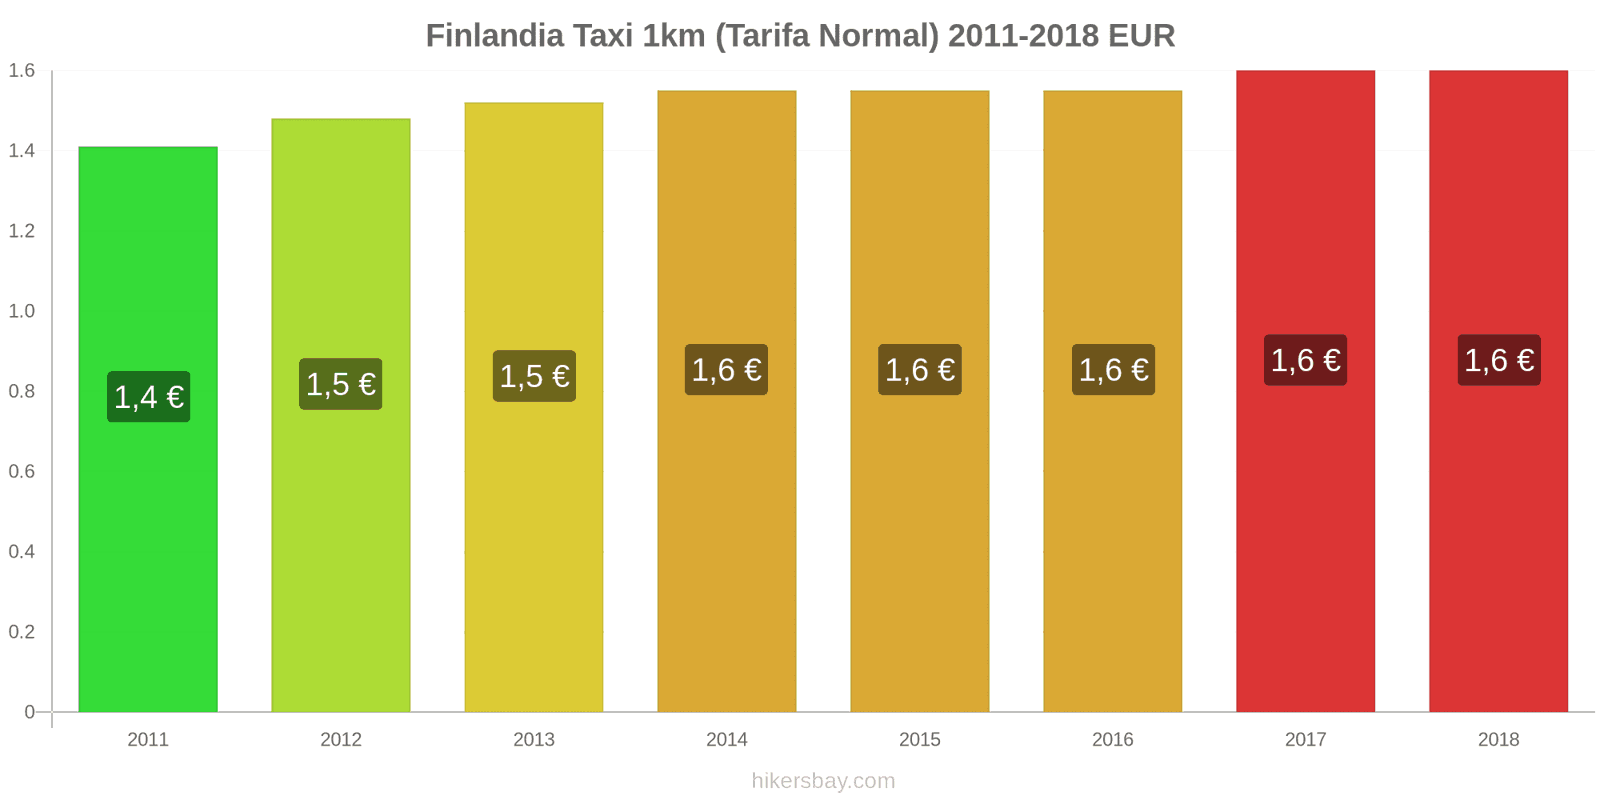 Finlandia cambios de precios Taxi 1km (tarifa normal) hikersbay.com